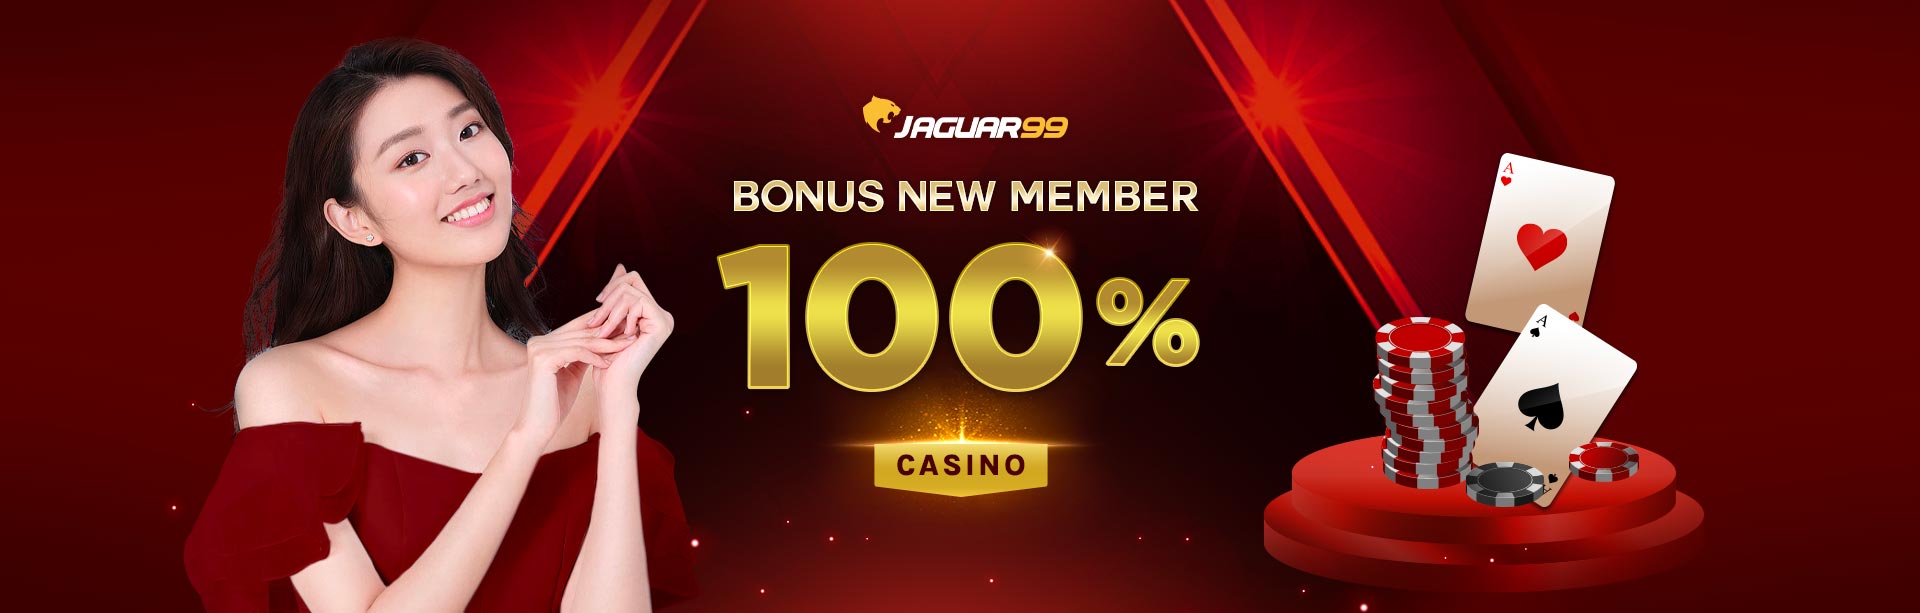 Jaguar99 Bonus New Member 100% Casino